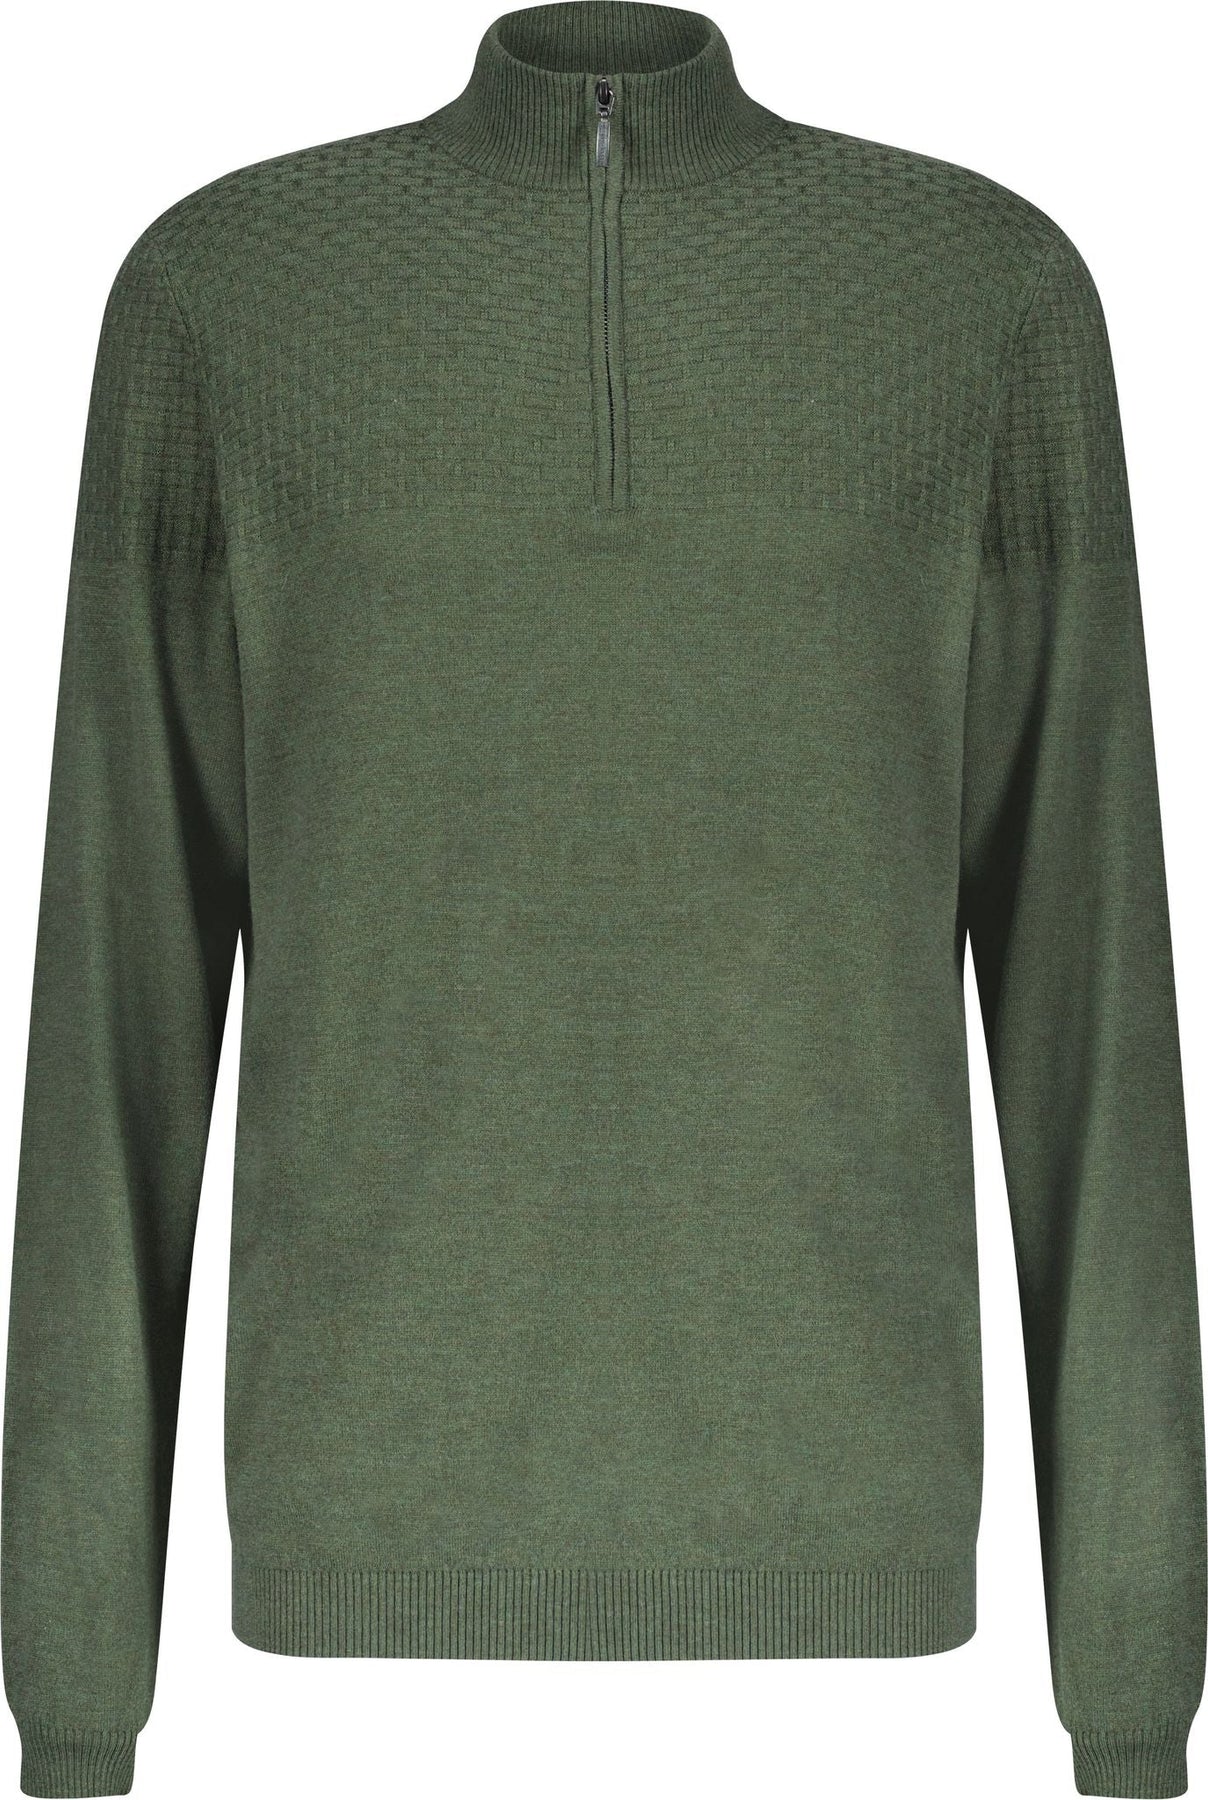 Halvsten Sweater - Olive Melange